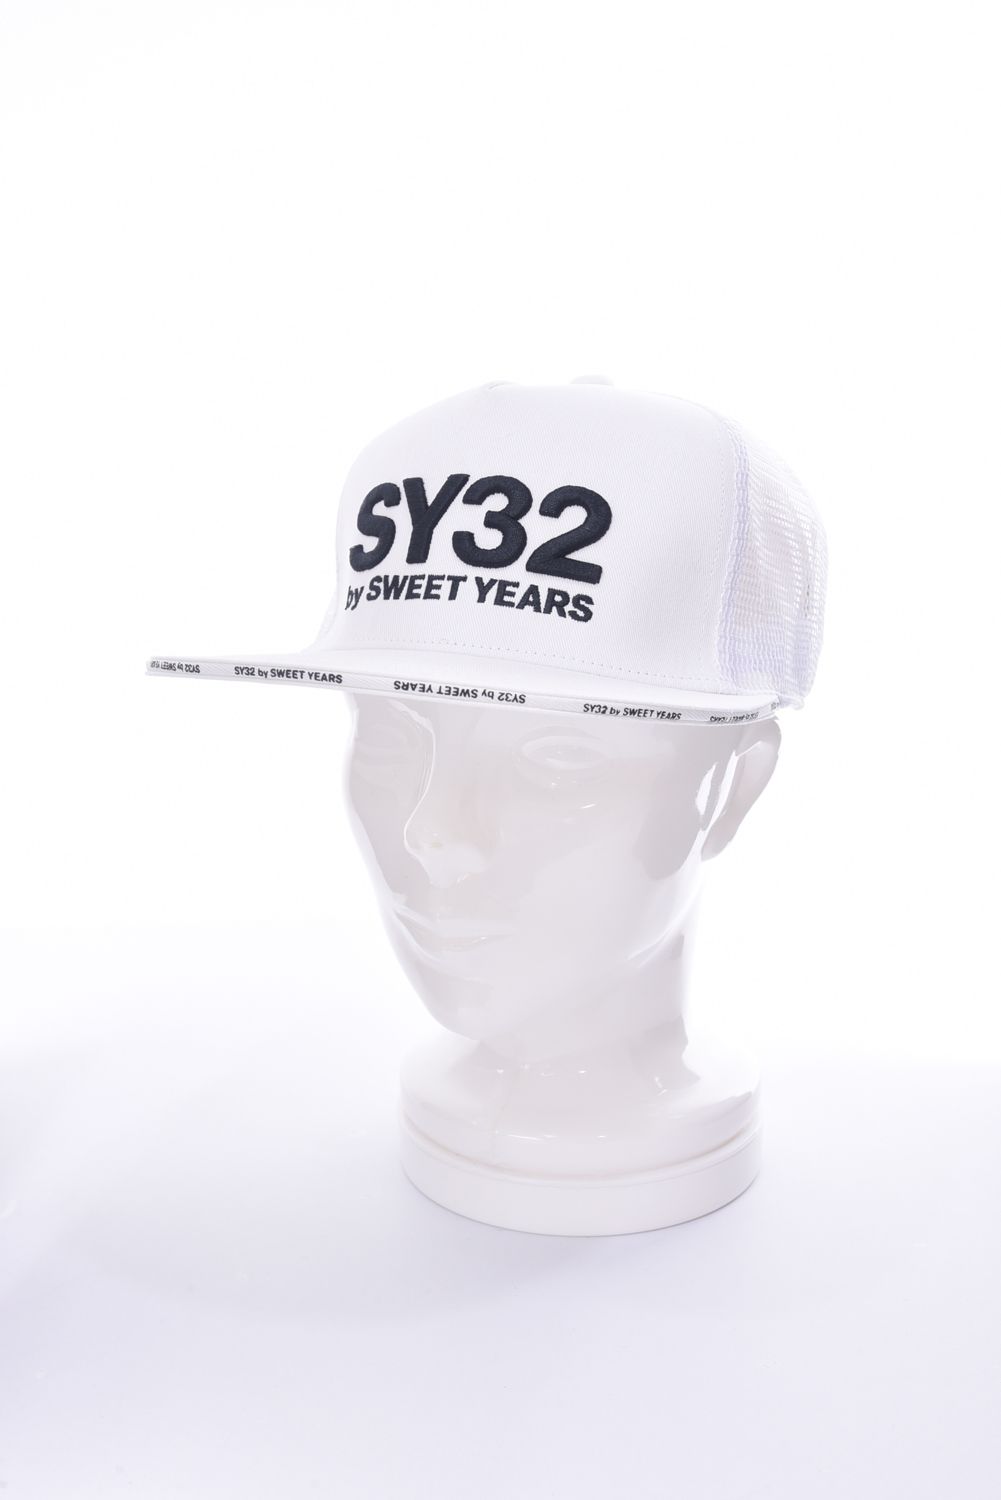 SY32 by SWEET YEARS GOLF - 3D LOGO TRUKER MESH CAP / 3Dロゴ